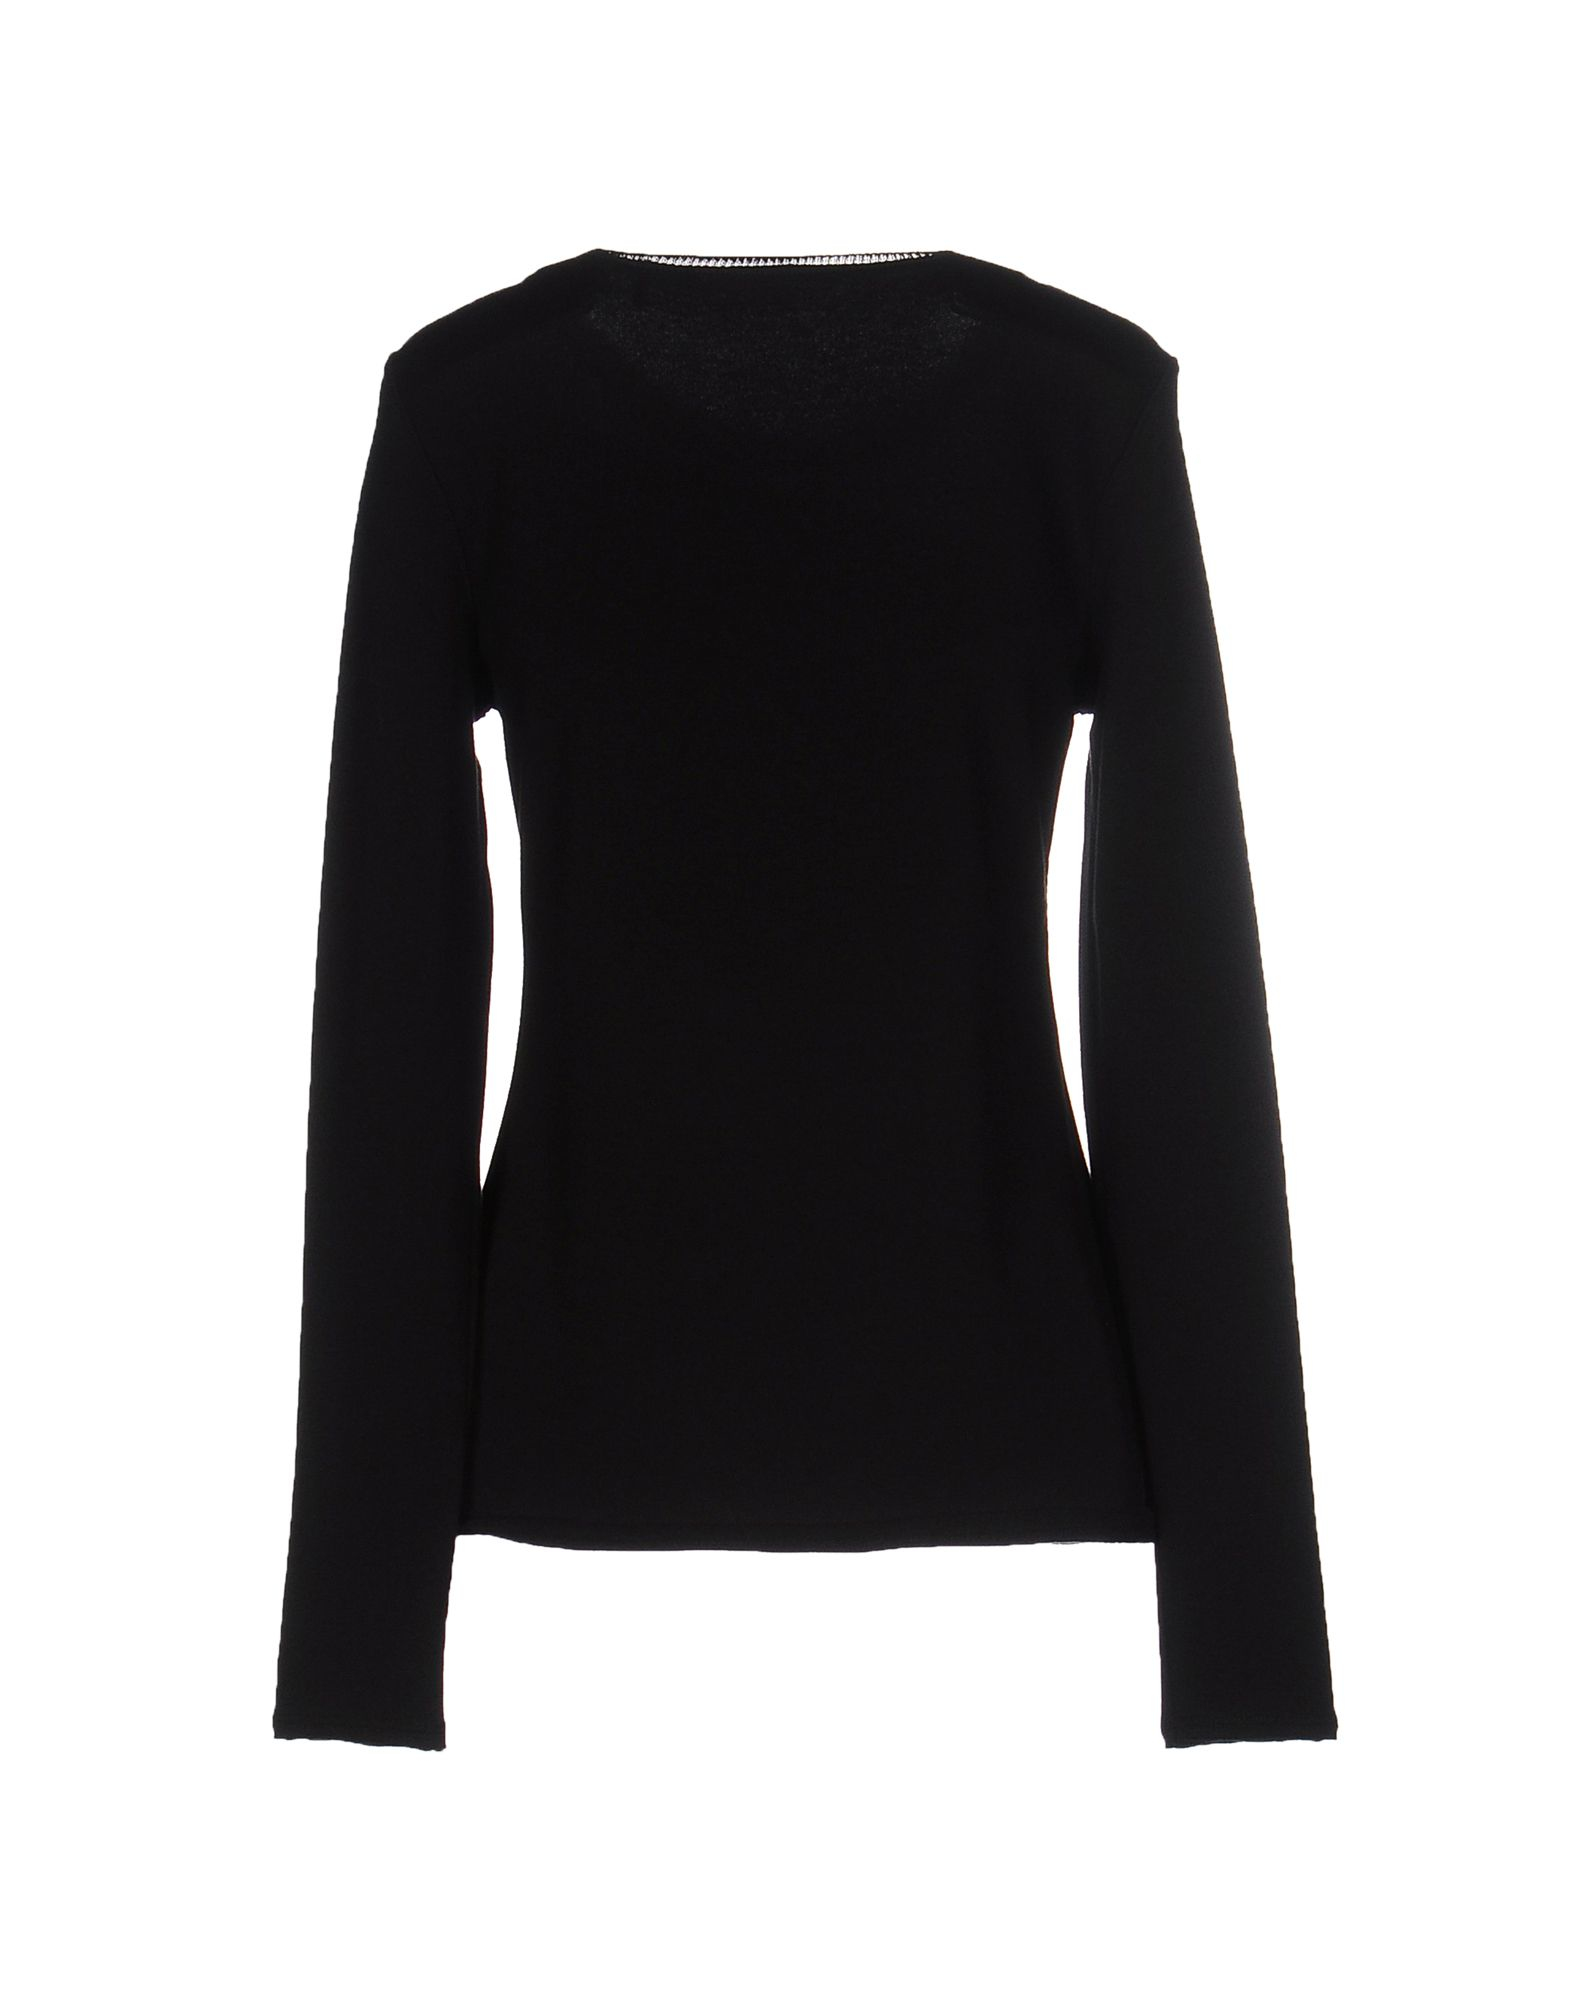 Lyst - Elie tahari Sweatshirt in Black